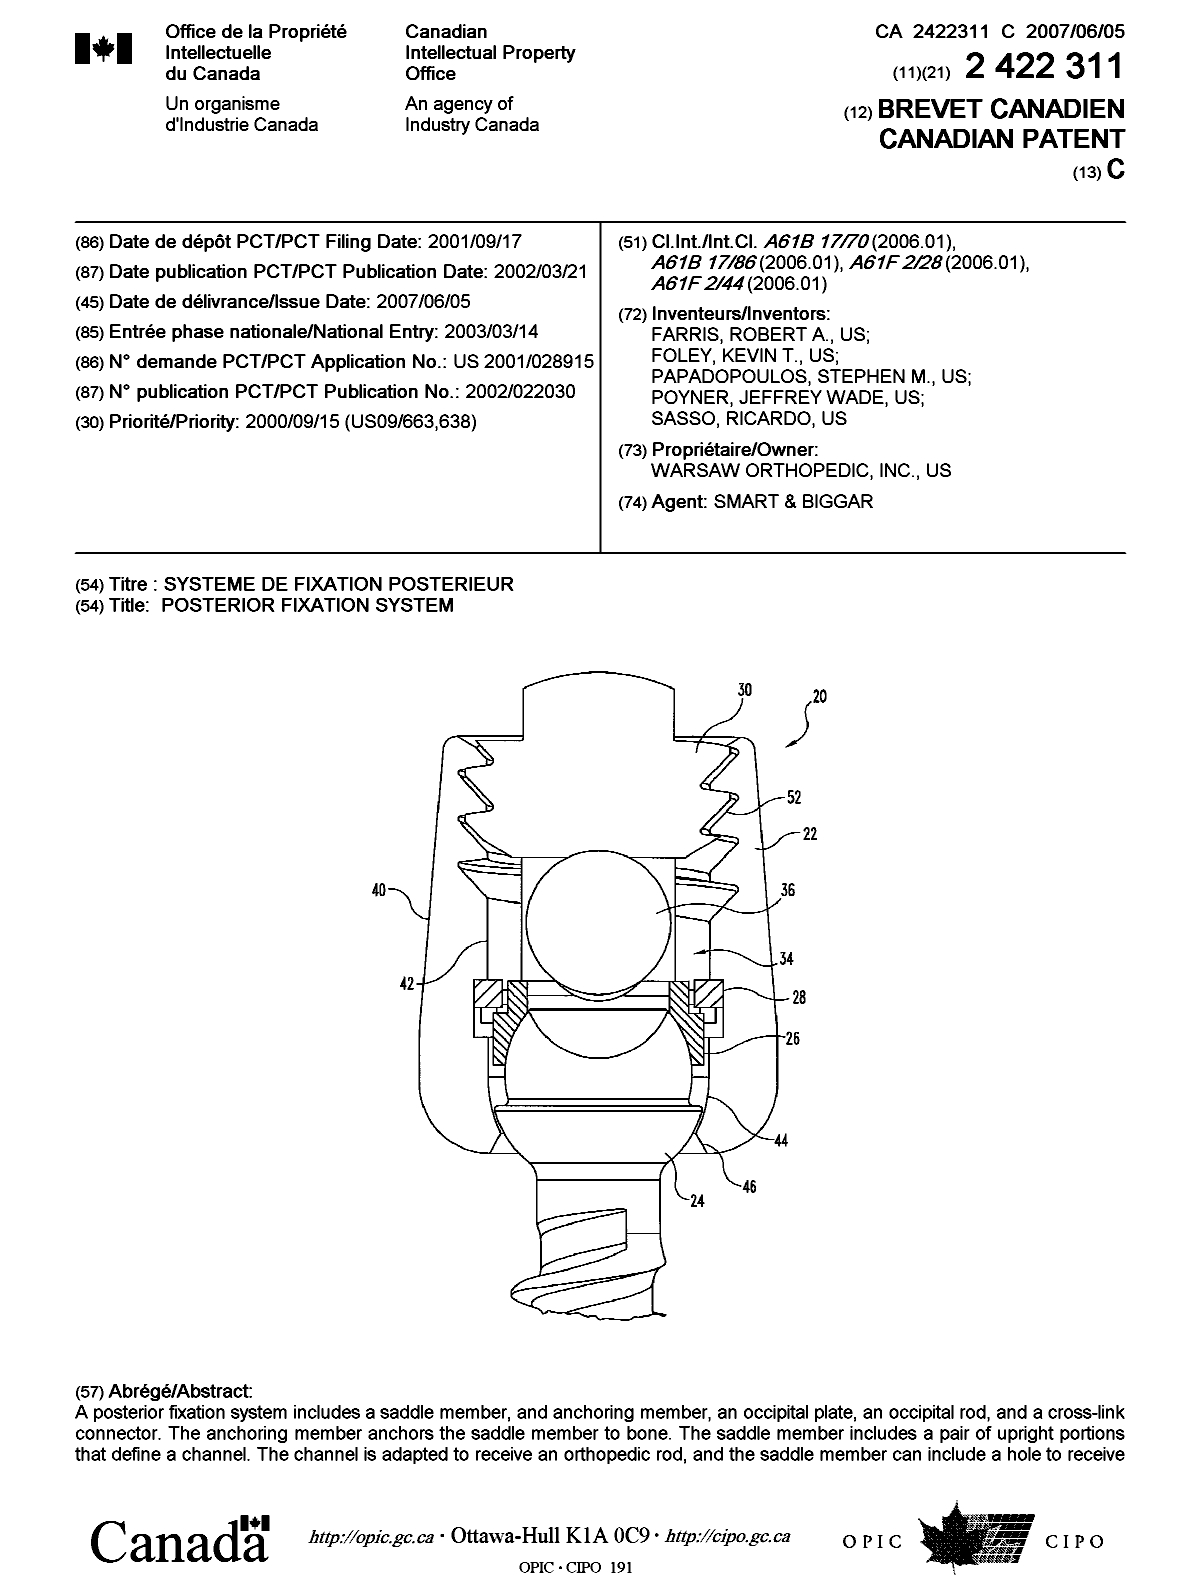 Document de brevet canadien 2422311. Page couverture 20061217. Image 1 de 2